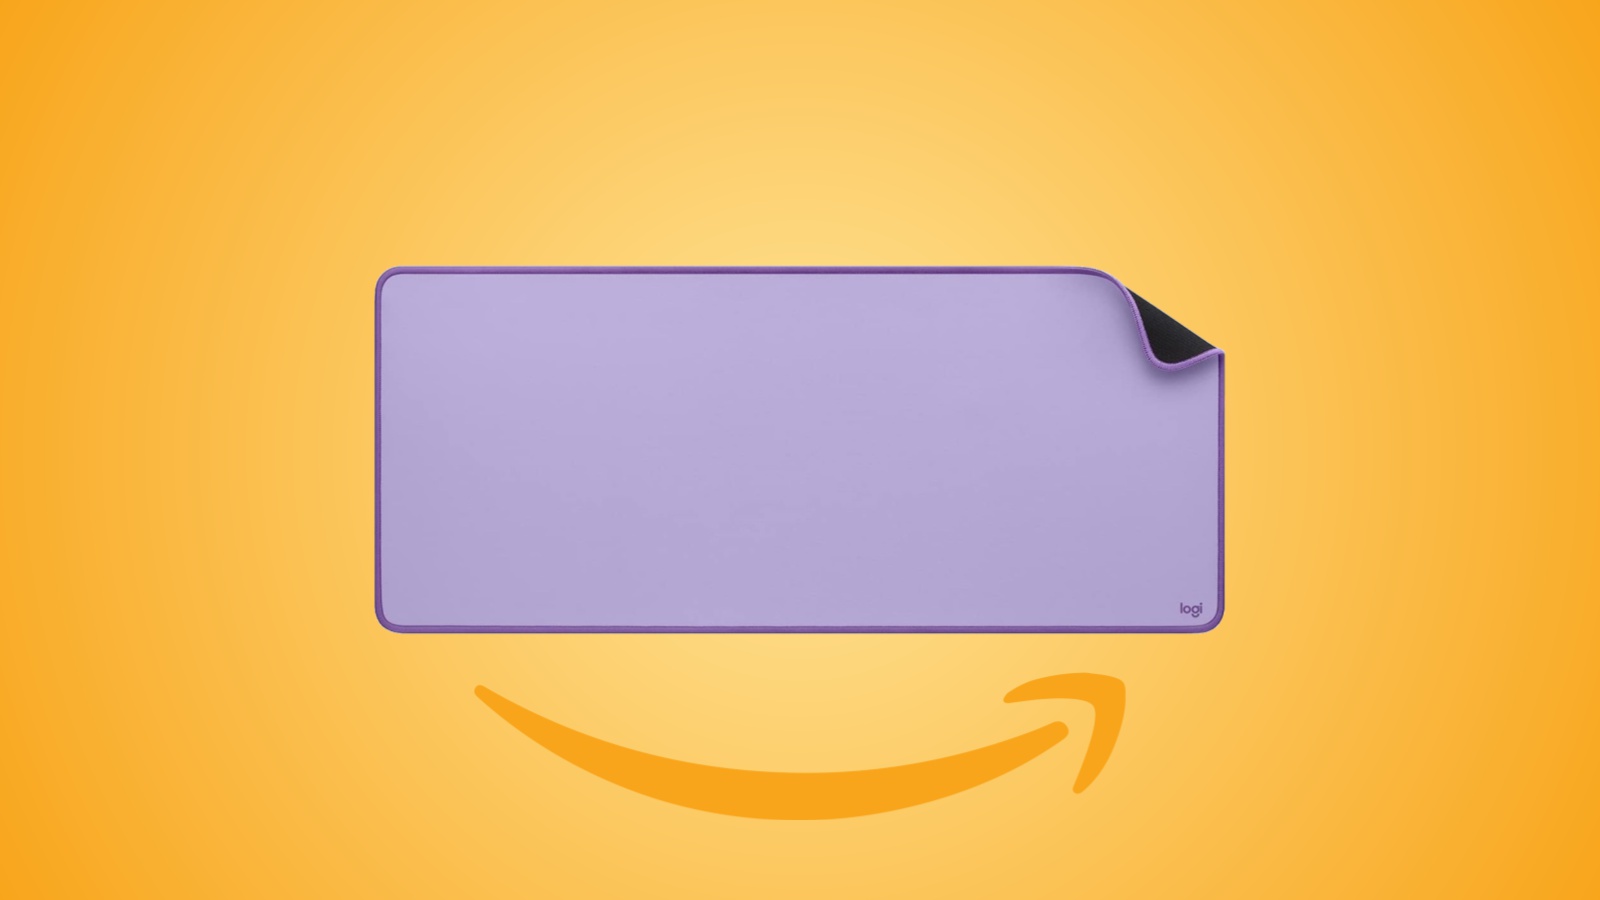 Offerte Amazon: Logitech Desk Mat, un tappetino per mouse in forte sconto